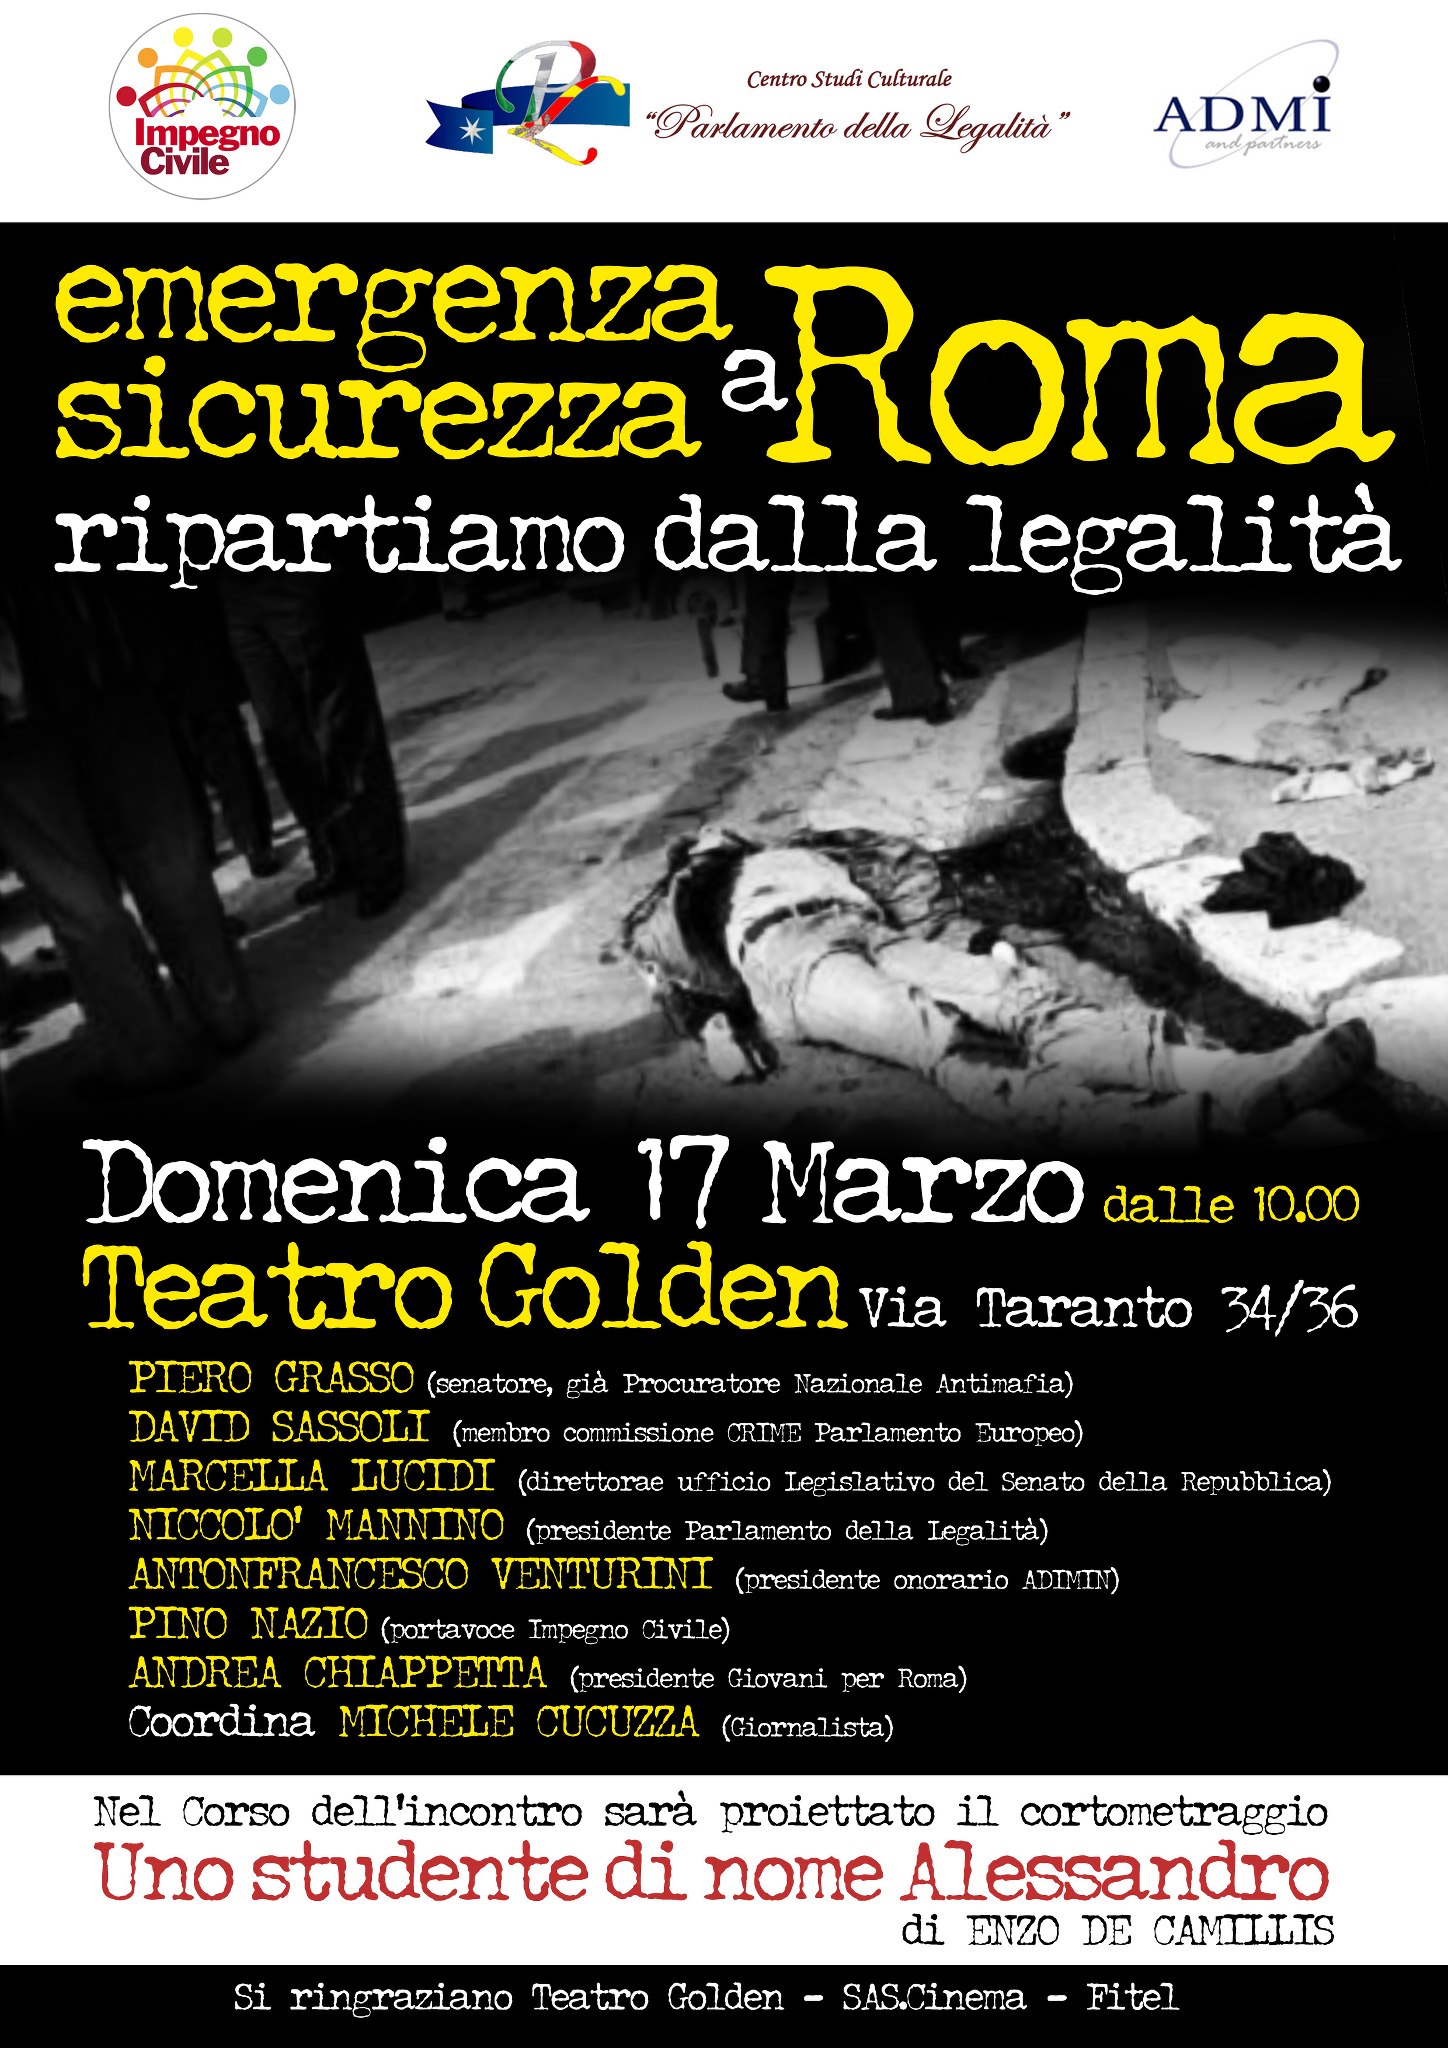 17 marzo, teatro Golden “Emergenza Sicurezza a Roma”